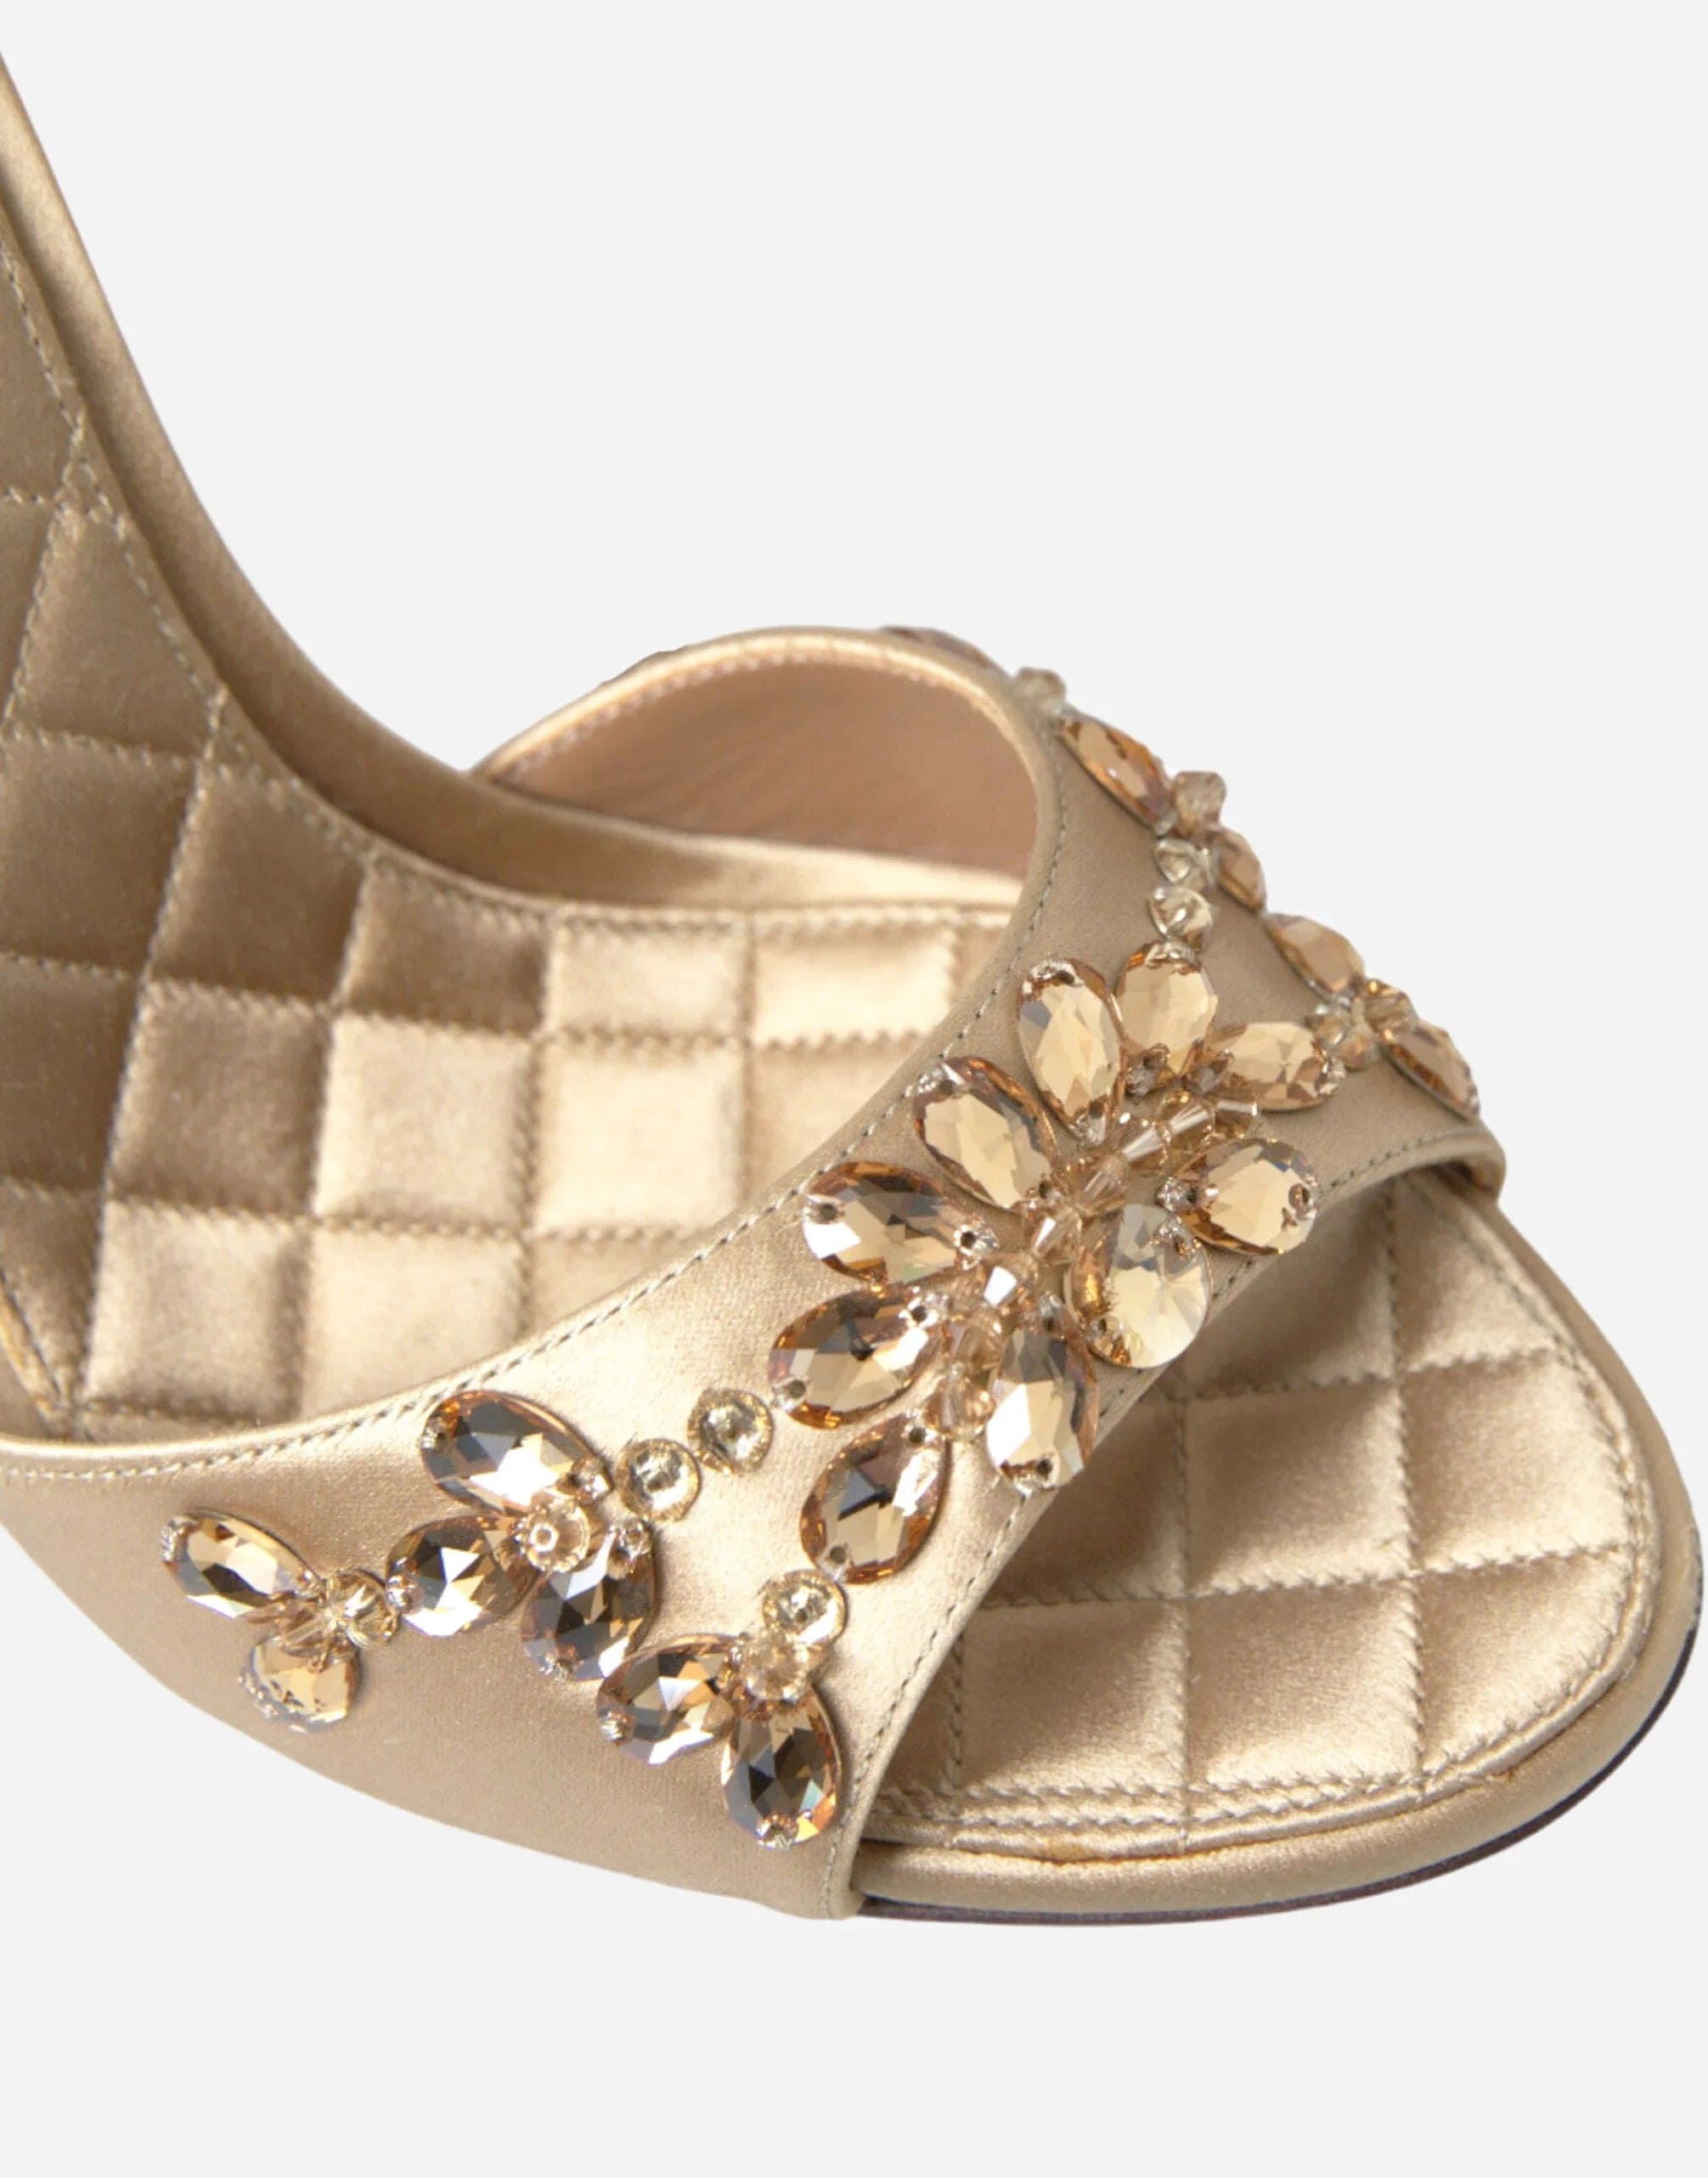 Dolce & Gabbana Ankle Strap Crystal Embellished Sandals